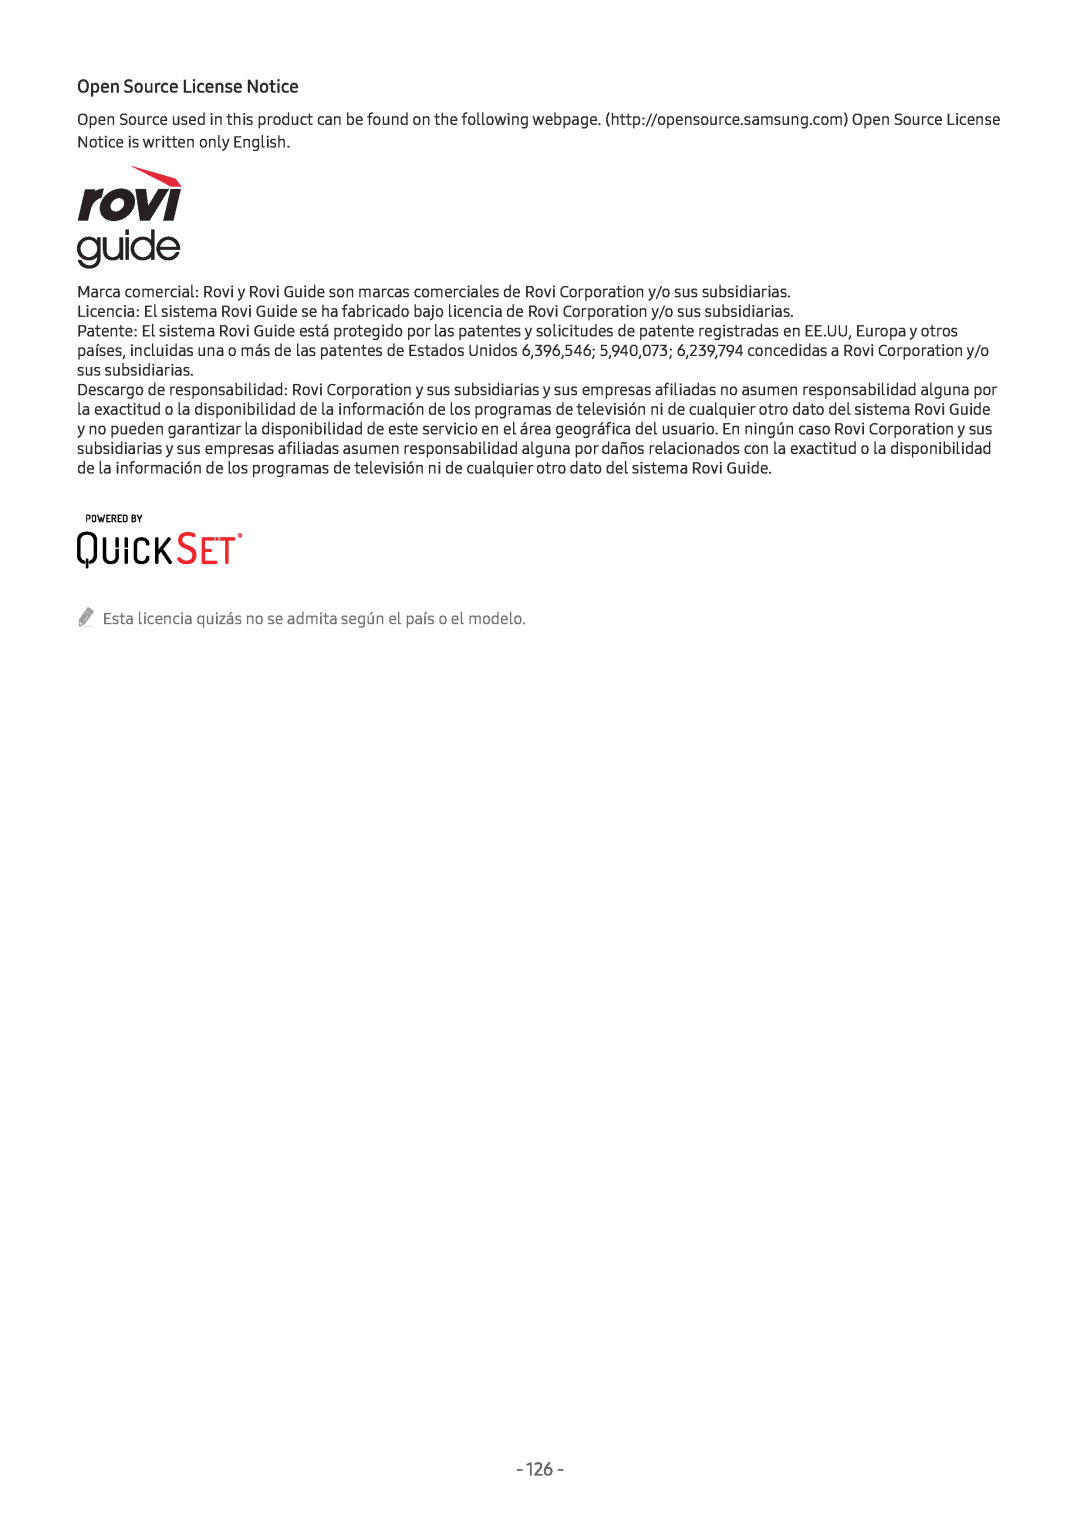 Samsung UE43M5505AKXXC manual Open Source License Notice, Esta licencia quizás no se admita según el país o el modelo 